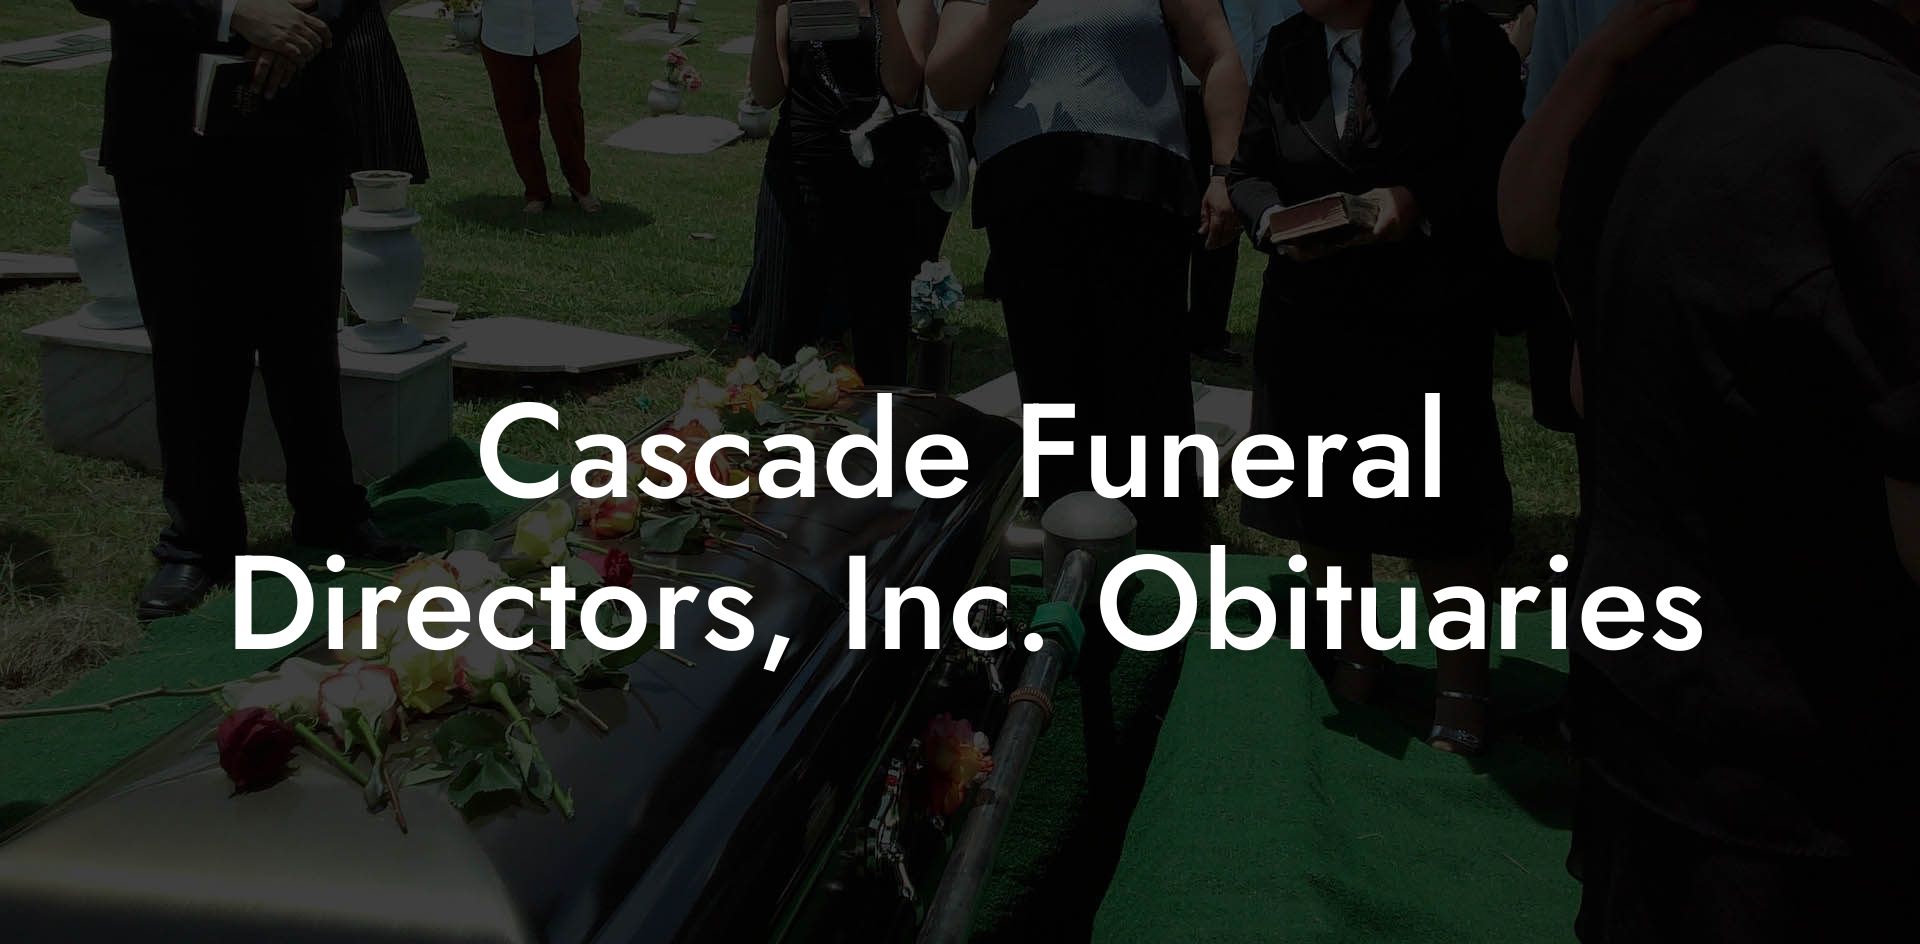 Cascade Funeral Directors, Inc. Obituaries